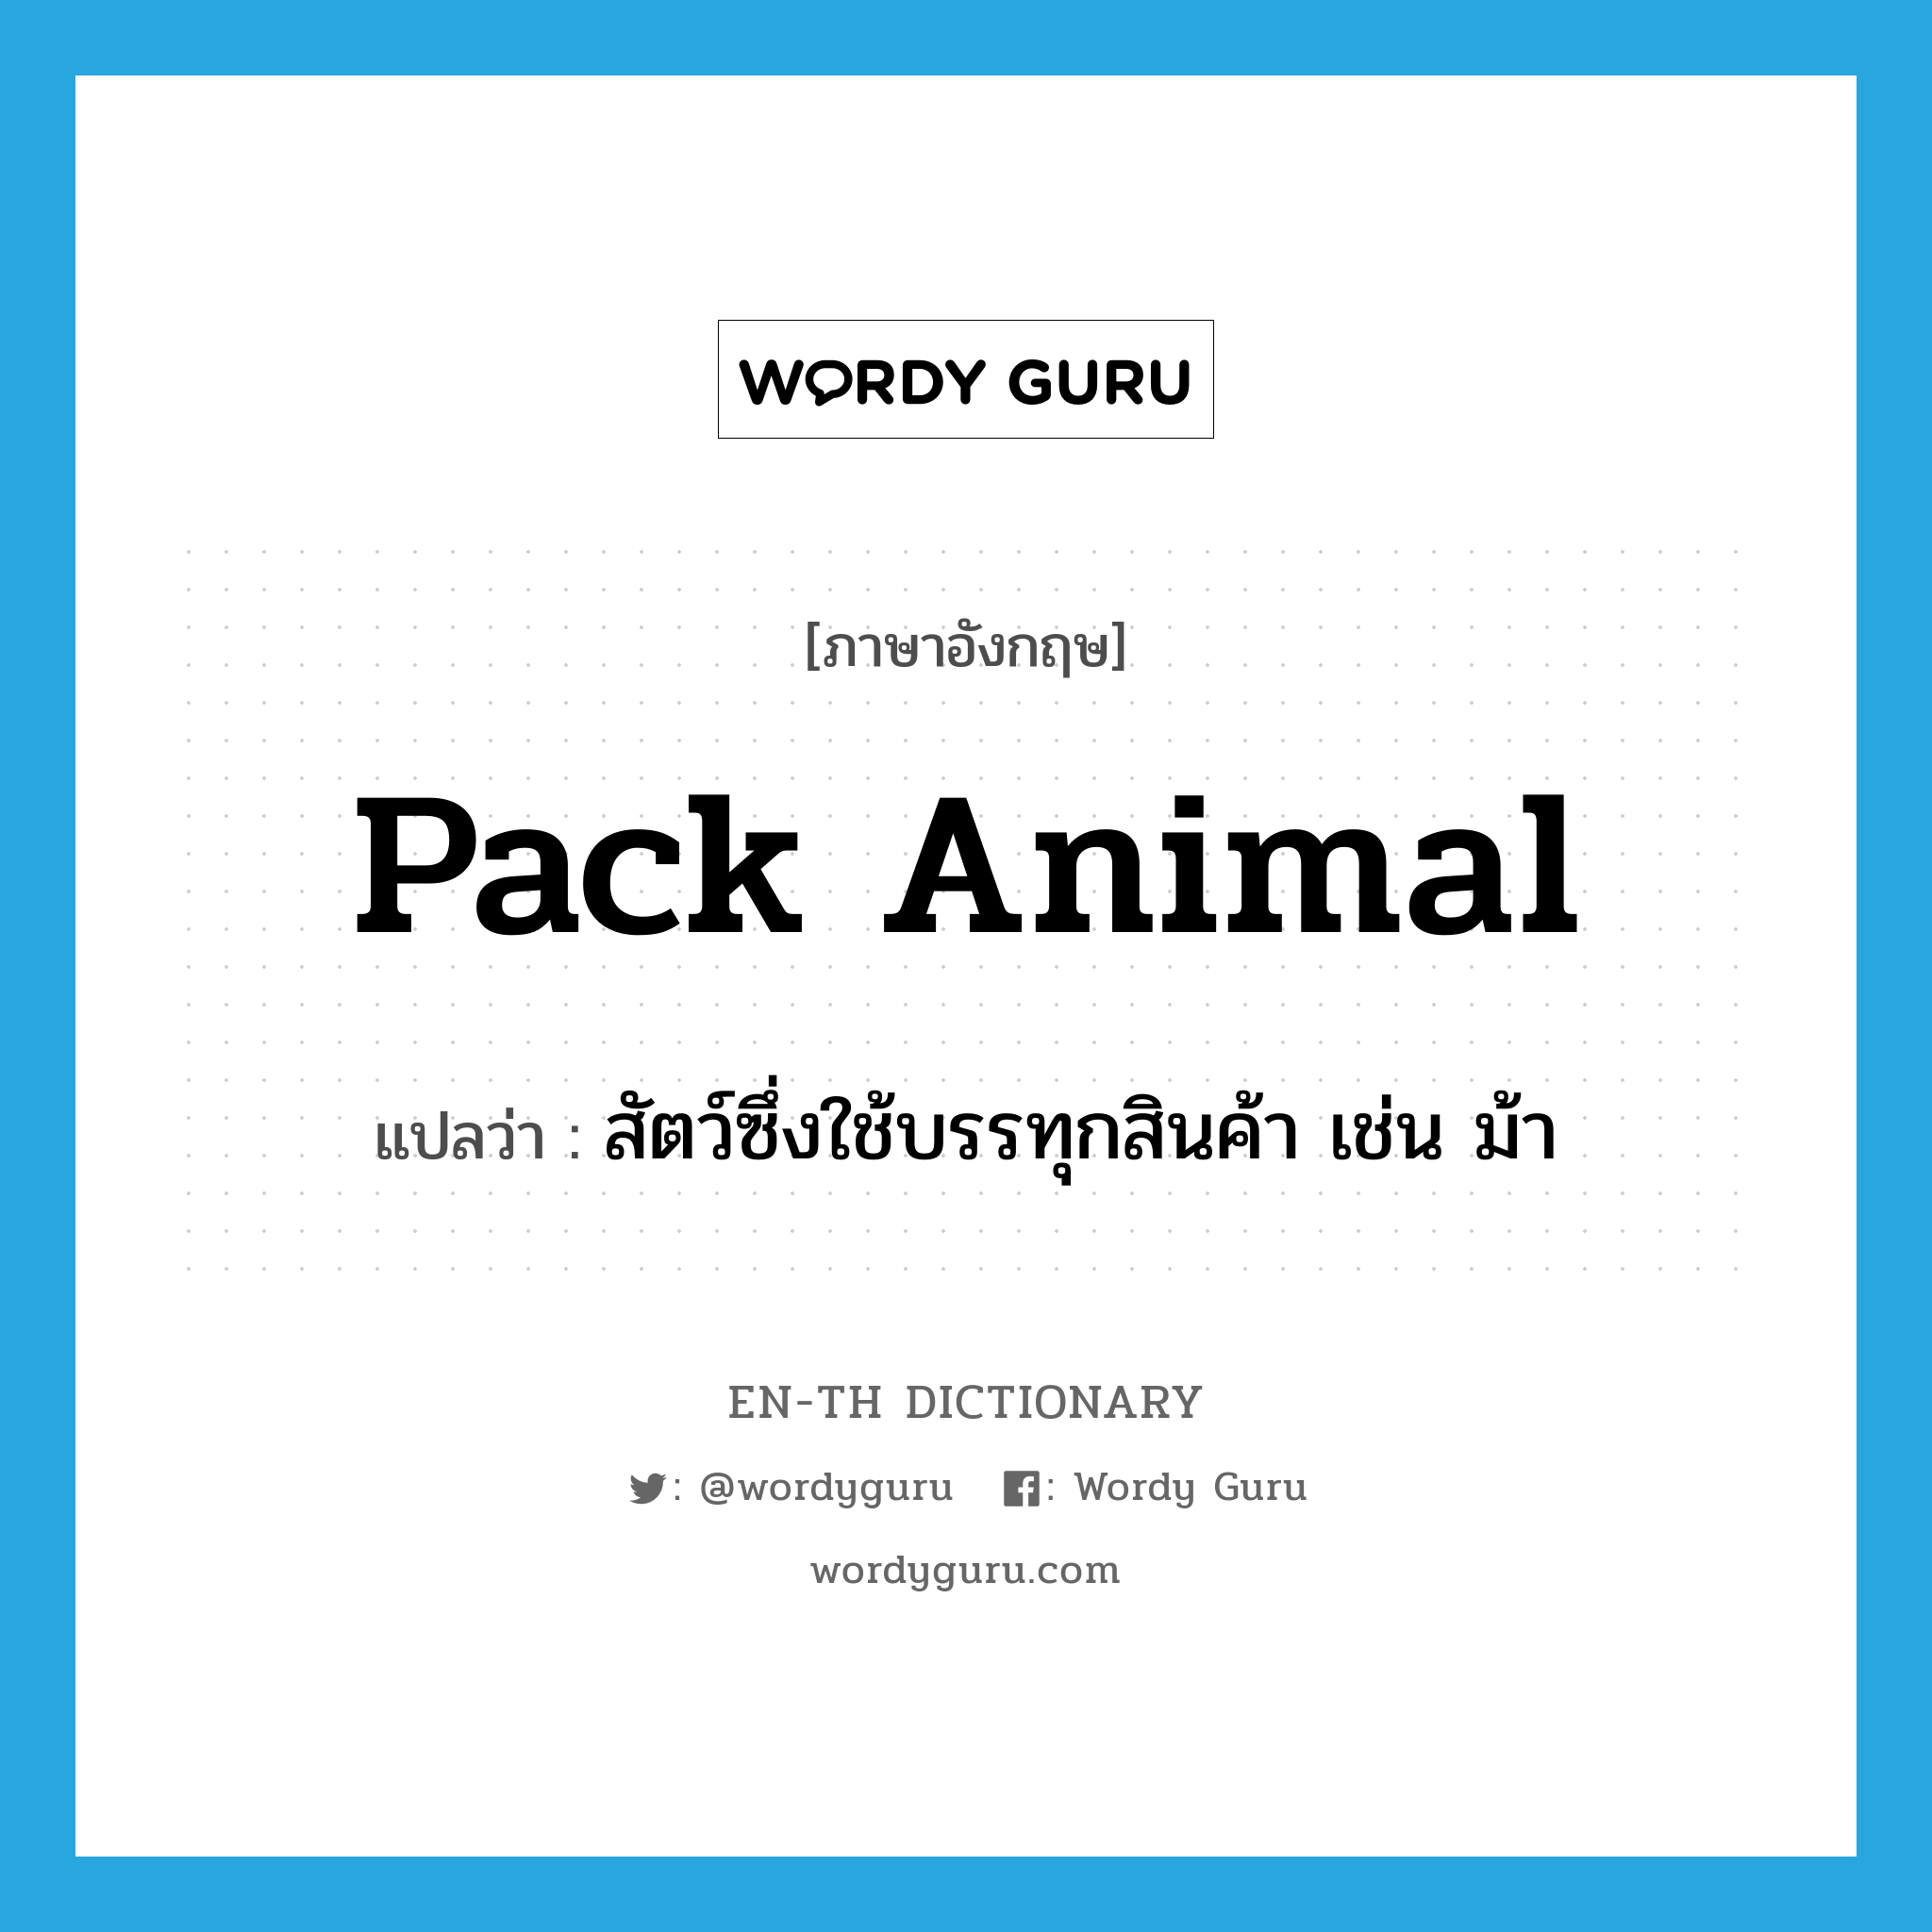 pack animal แปลว่า?, คำศัพท์ภาษาอังกฤษ pack animal แปลว่า สัตว์ซึ่งใช้บรรทุกสินค้า เช่น ม้า ประเภท N หมวด N